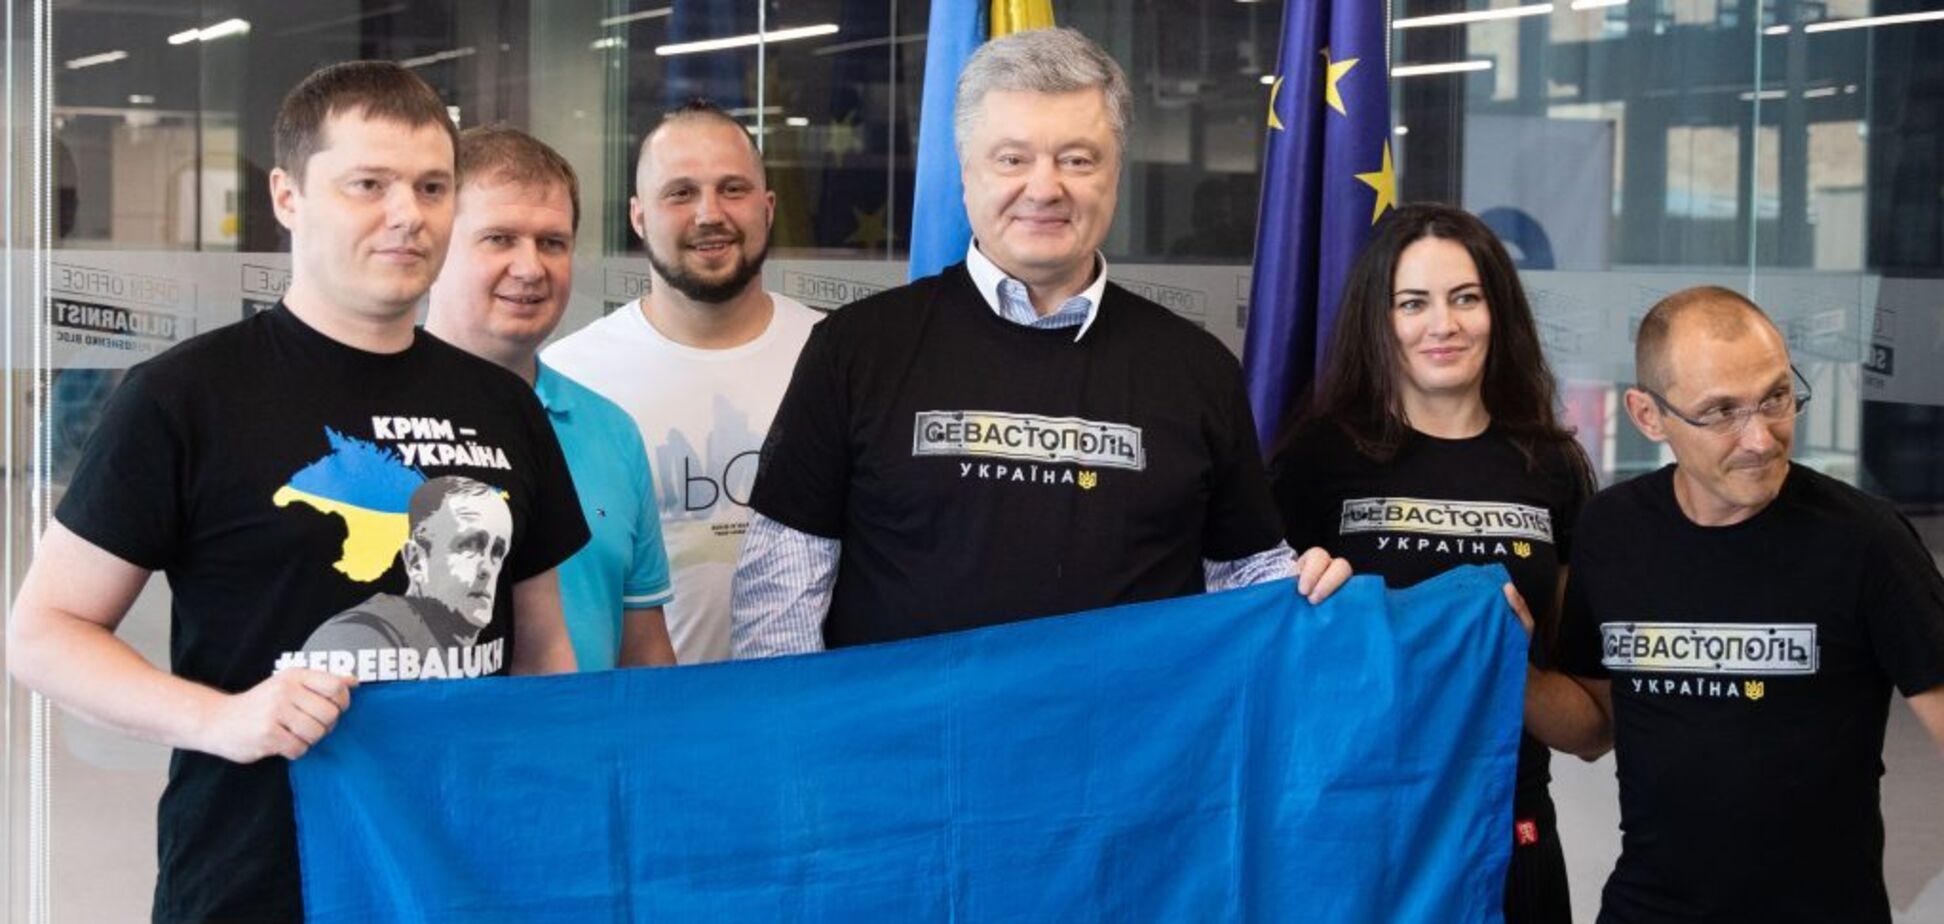 Порошенко встретился с проукраинскими активистами из Севастополя